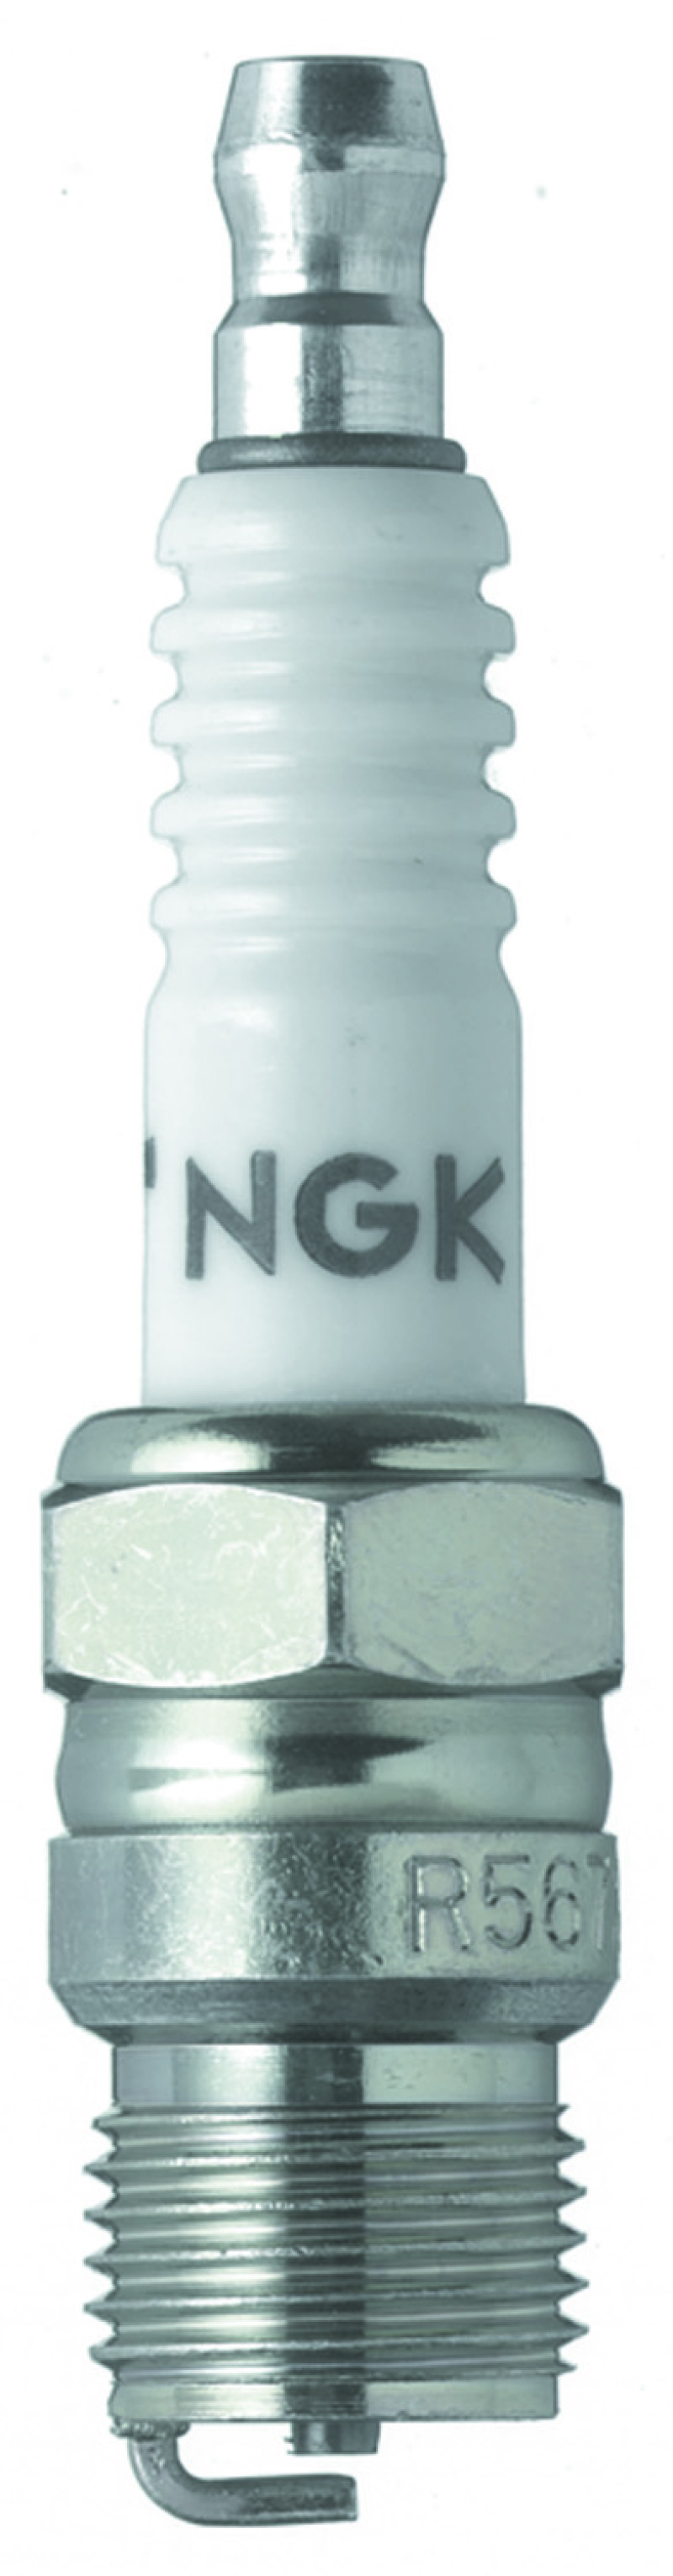 NGK Racing Spark Plug Box of 4 (R5673-10) - 4050